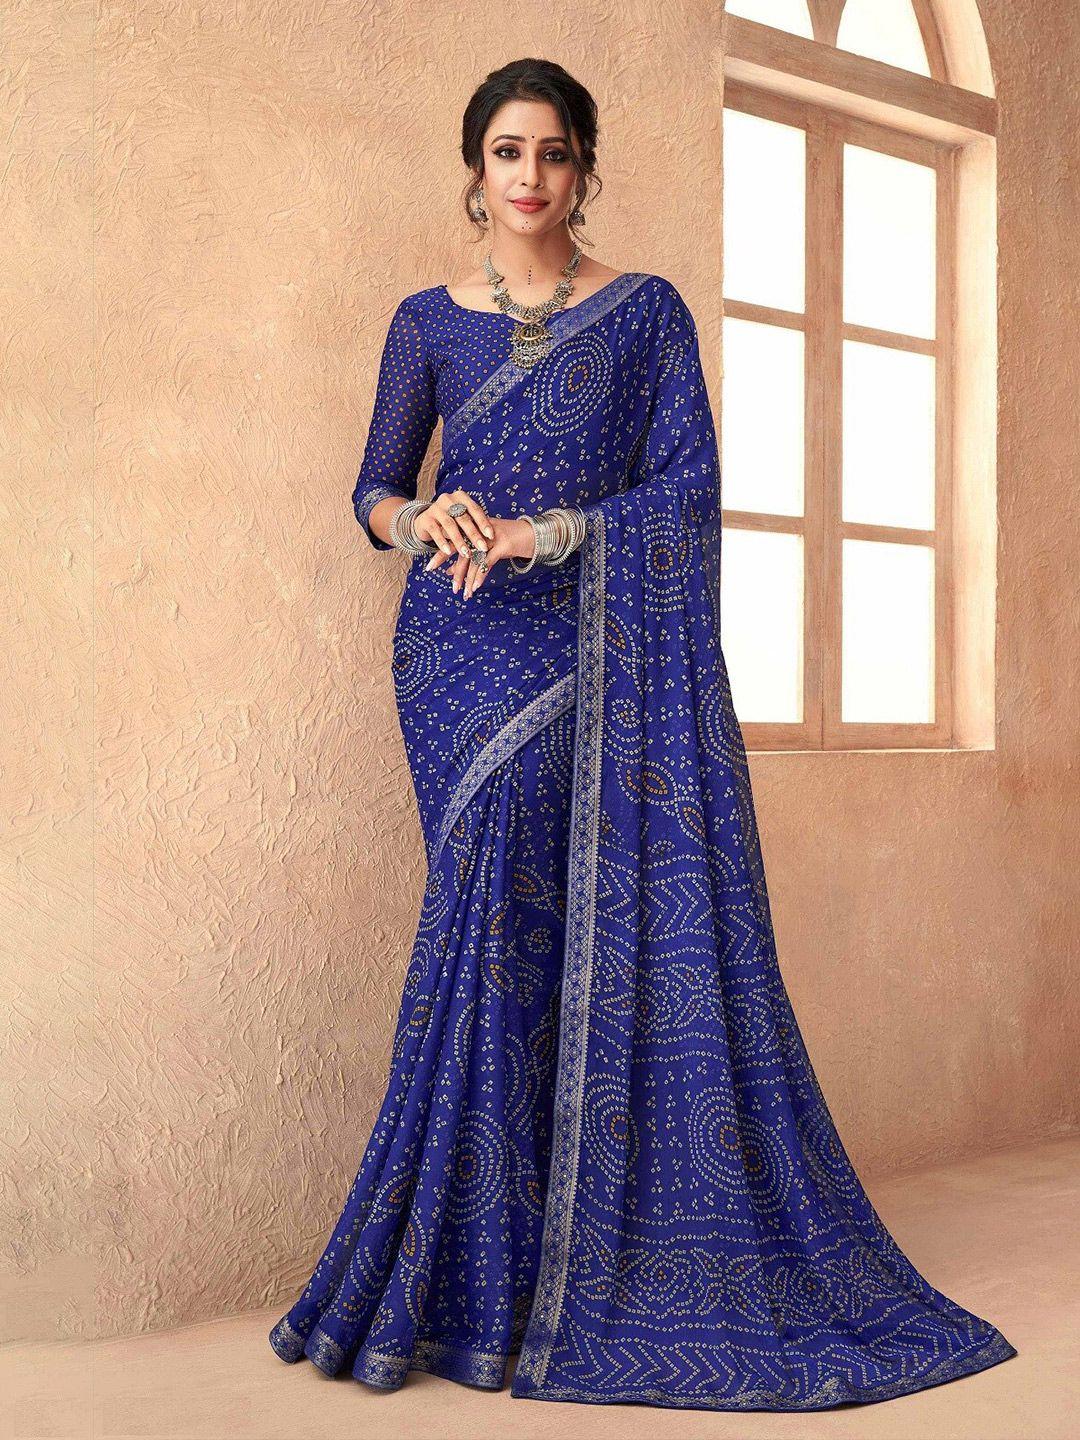 mitera blue & white printed bandhani saree